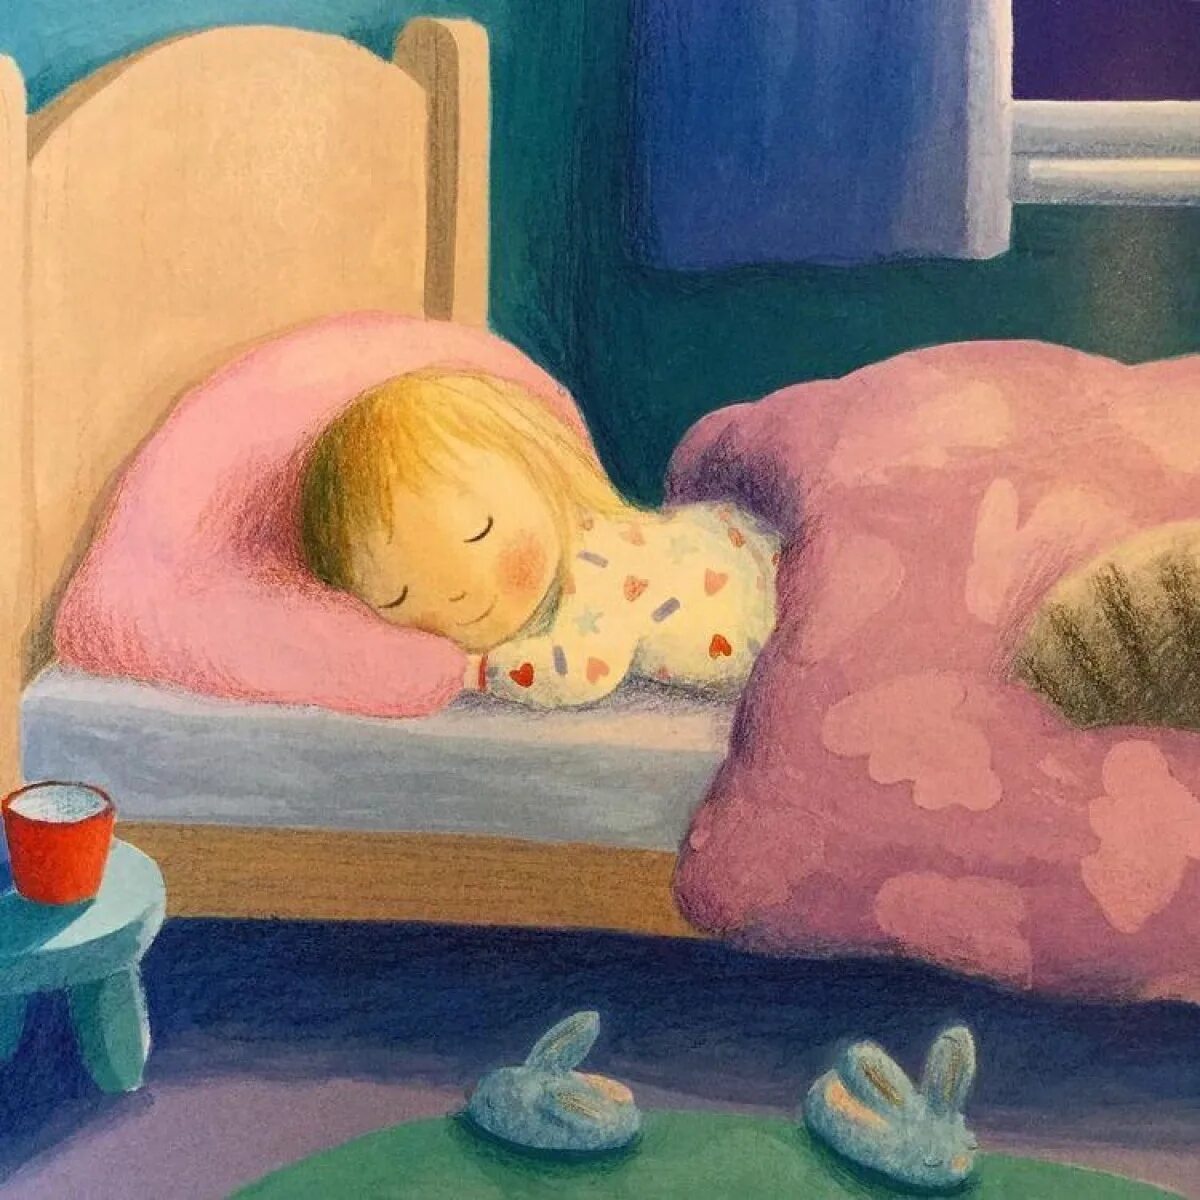 Спящий ребенок. Детские иллюстрации сон. История на ночь для детей 4 5